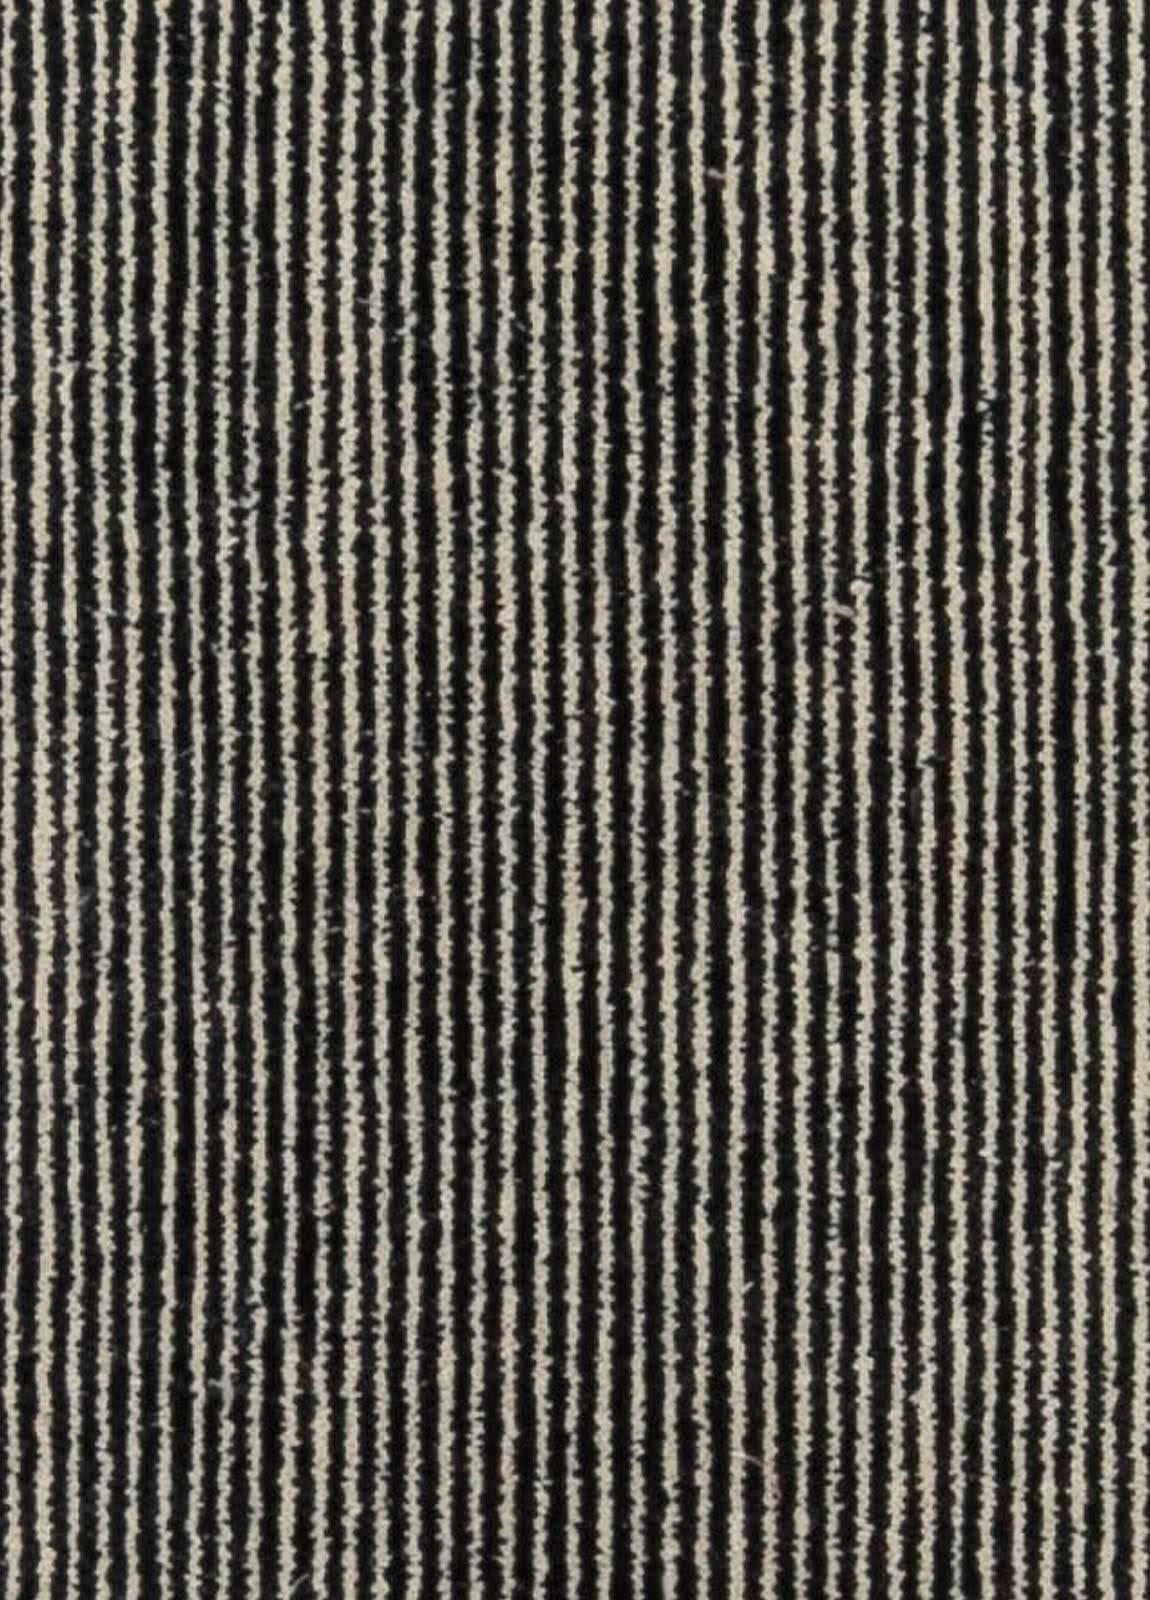 High-Quality Contemporary striped gray Handmade rug by Doris Leslie Blau
Size: 4'3